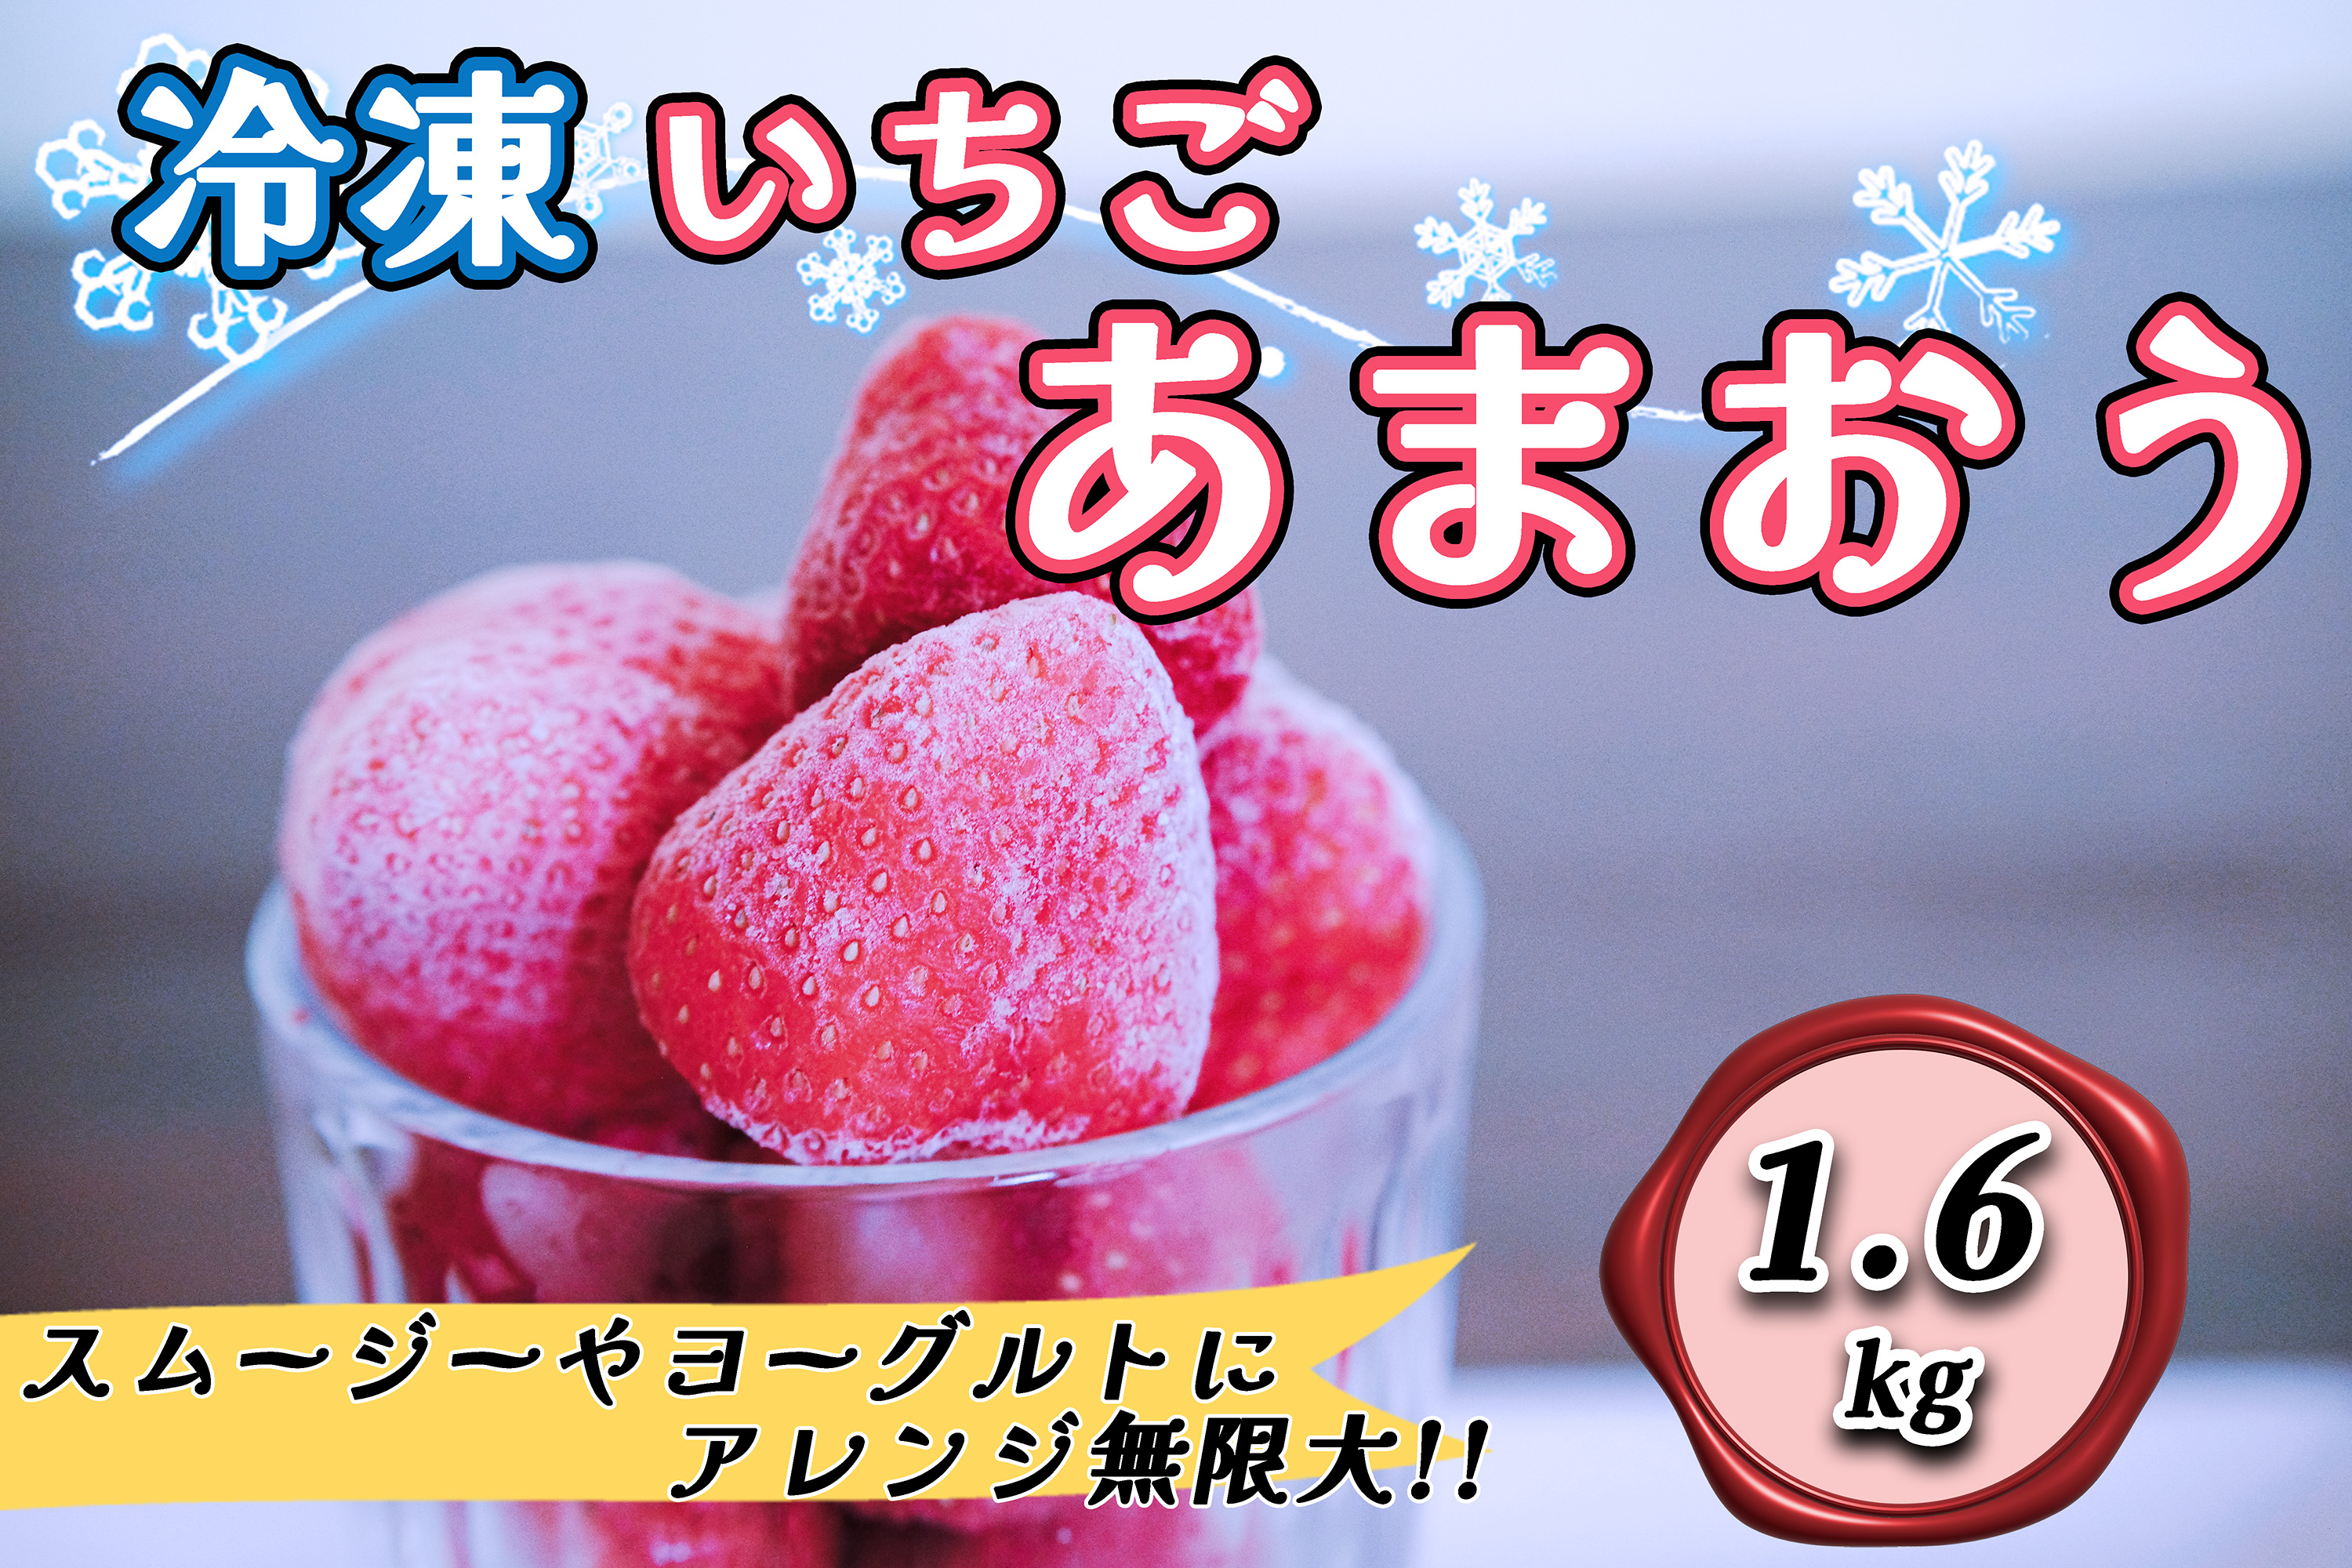 CZ-008_福岡県産ブランド【あまおう】冷凍いちご1.6kg